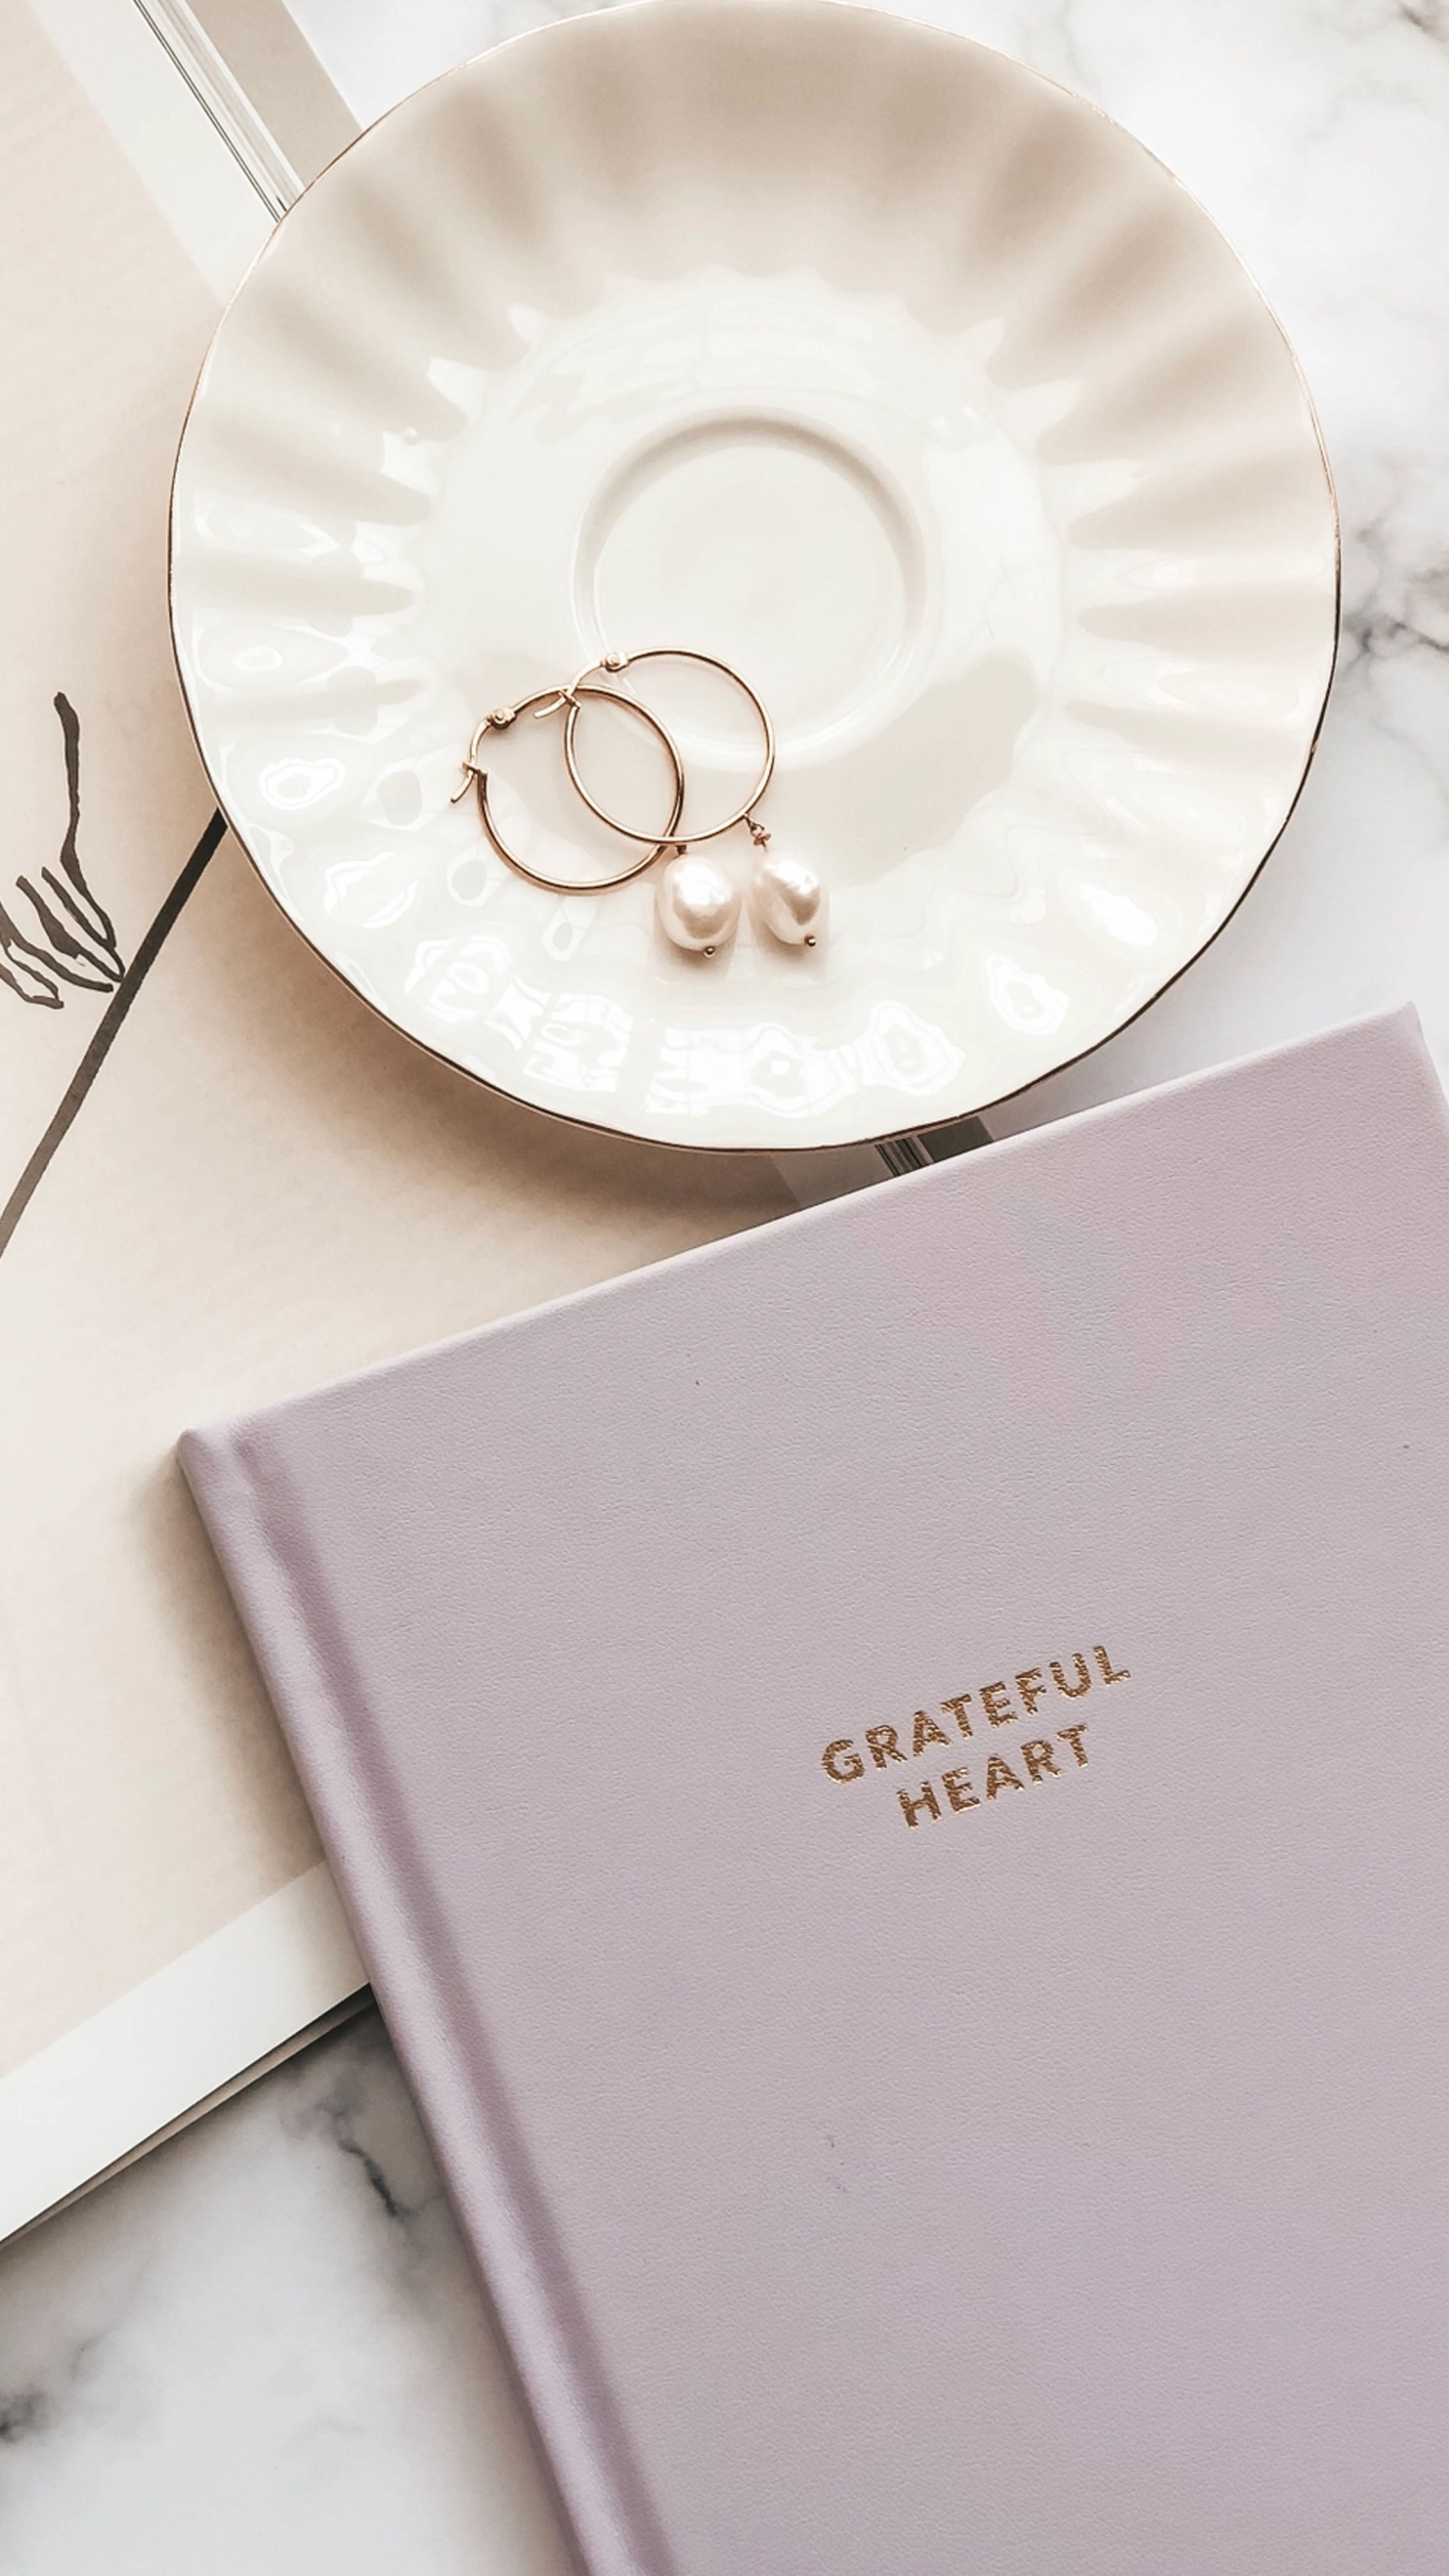 Grateful Heart: Gratitude Journal